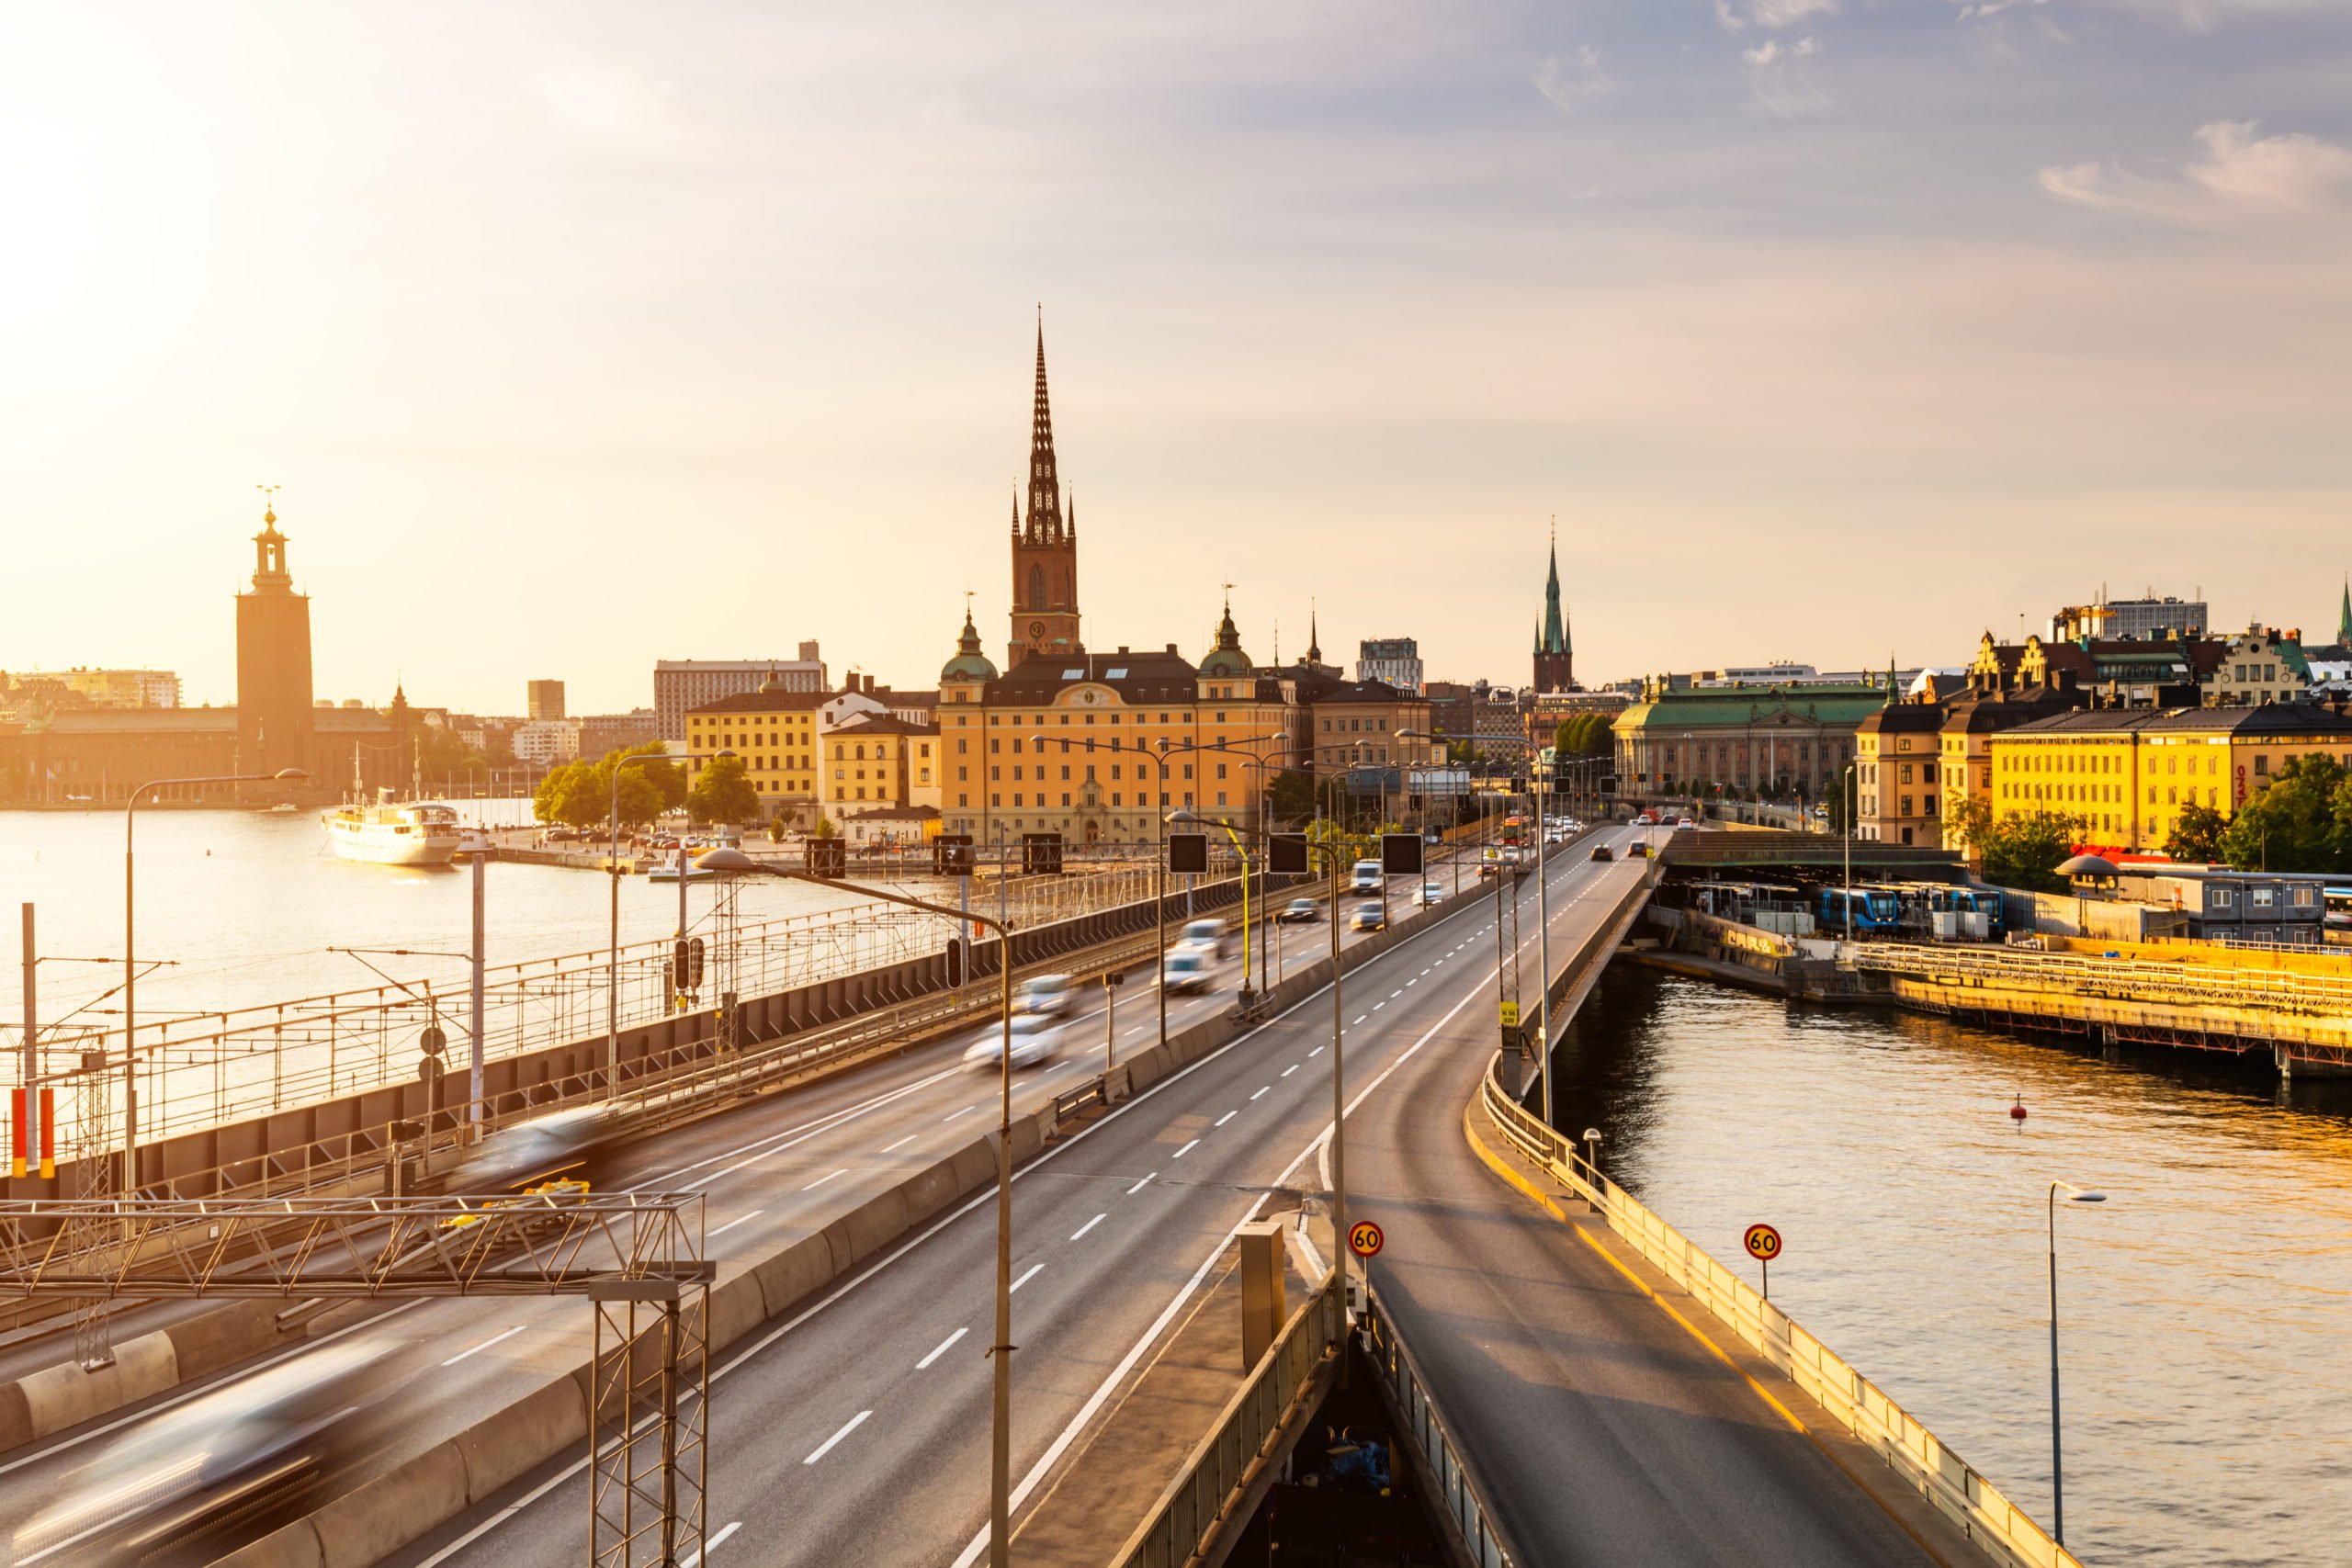 Opmåling, afsætning, scanning, mobile mapping og kontrolmåling er blandt de landinspektørydelser, der skaber fundamentet for byudviklingen i Stockholm